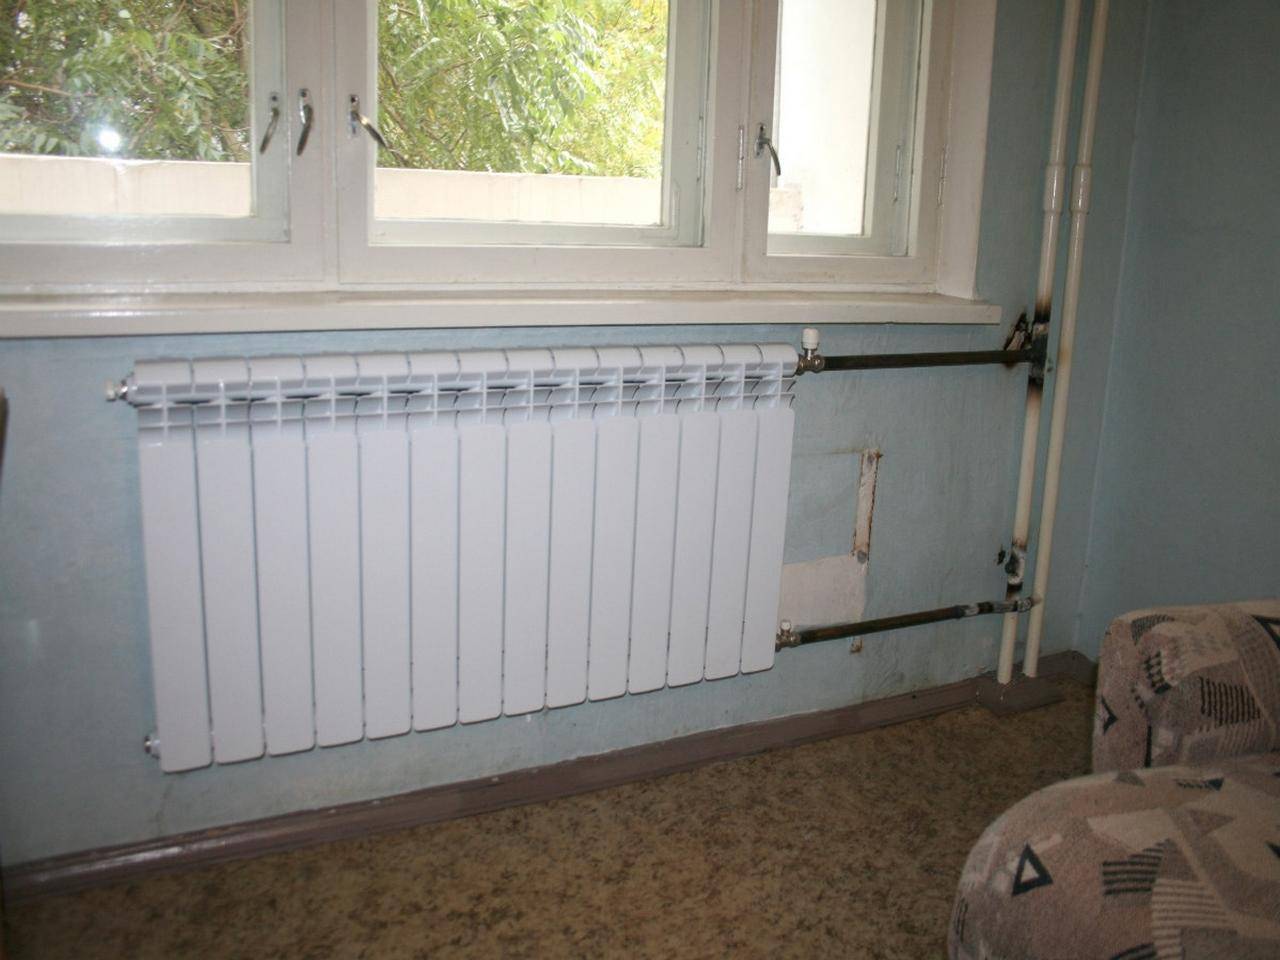 Замена радиатора отопления в квартире, как правильно поменять батареи, детальное фото и видео